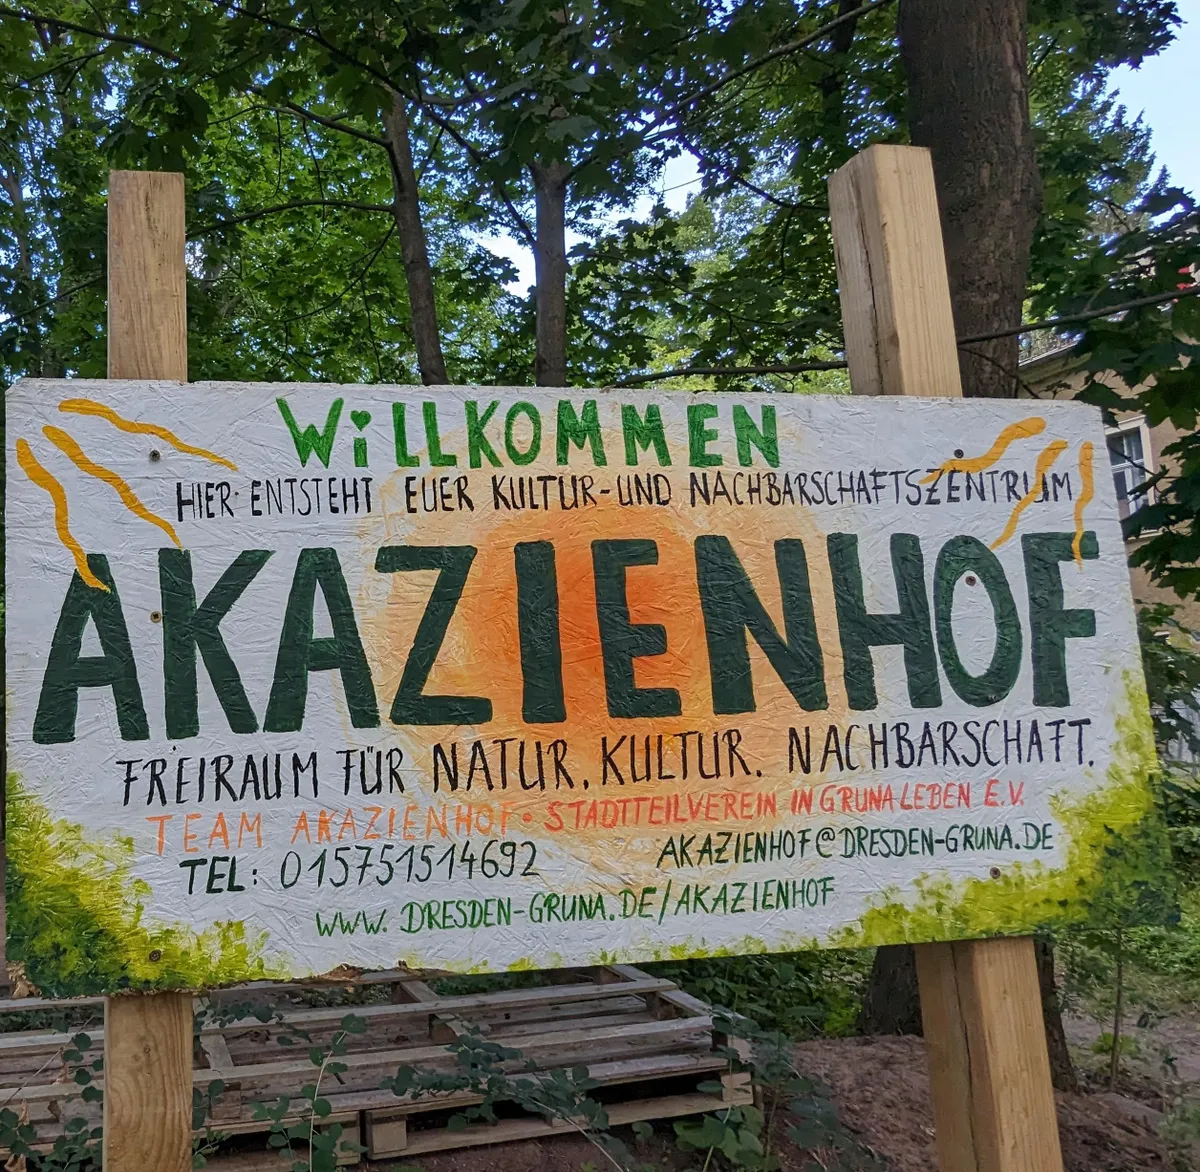 Akazienhof